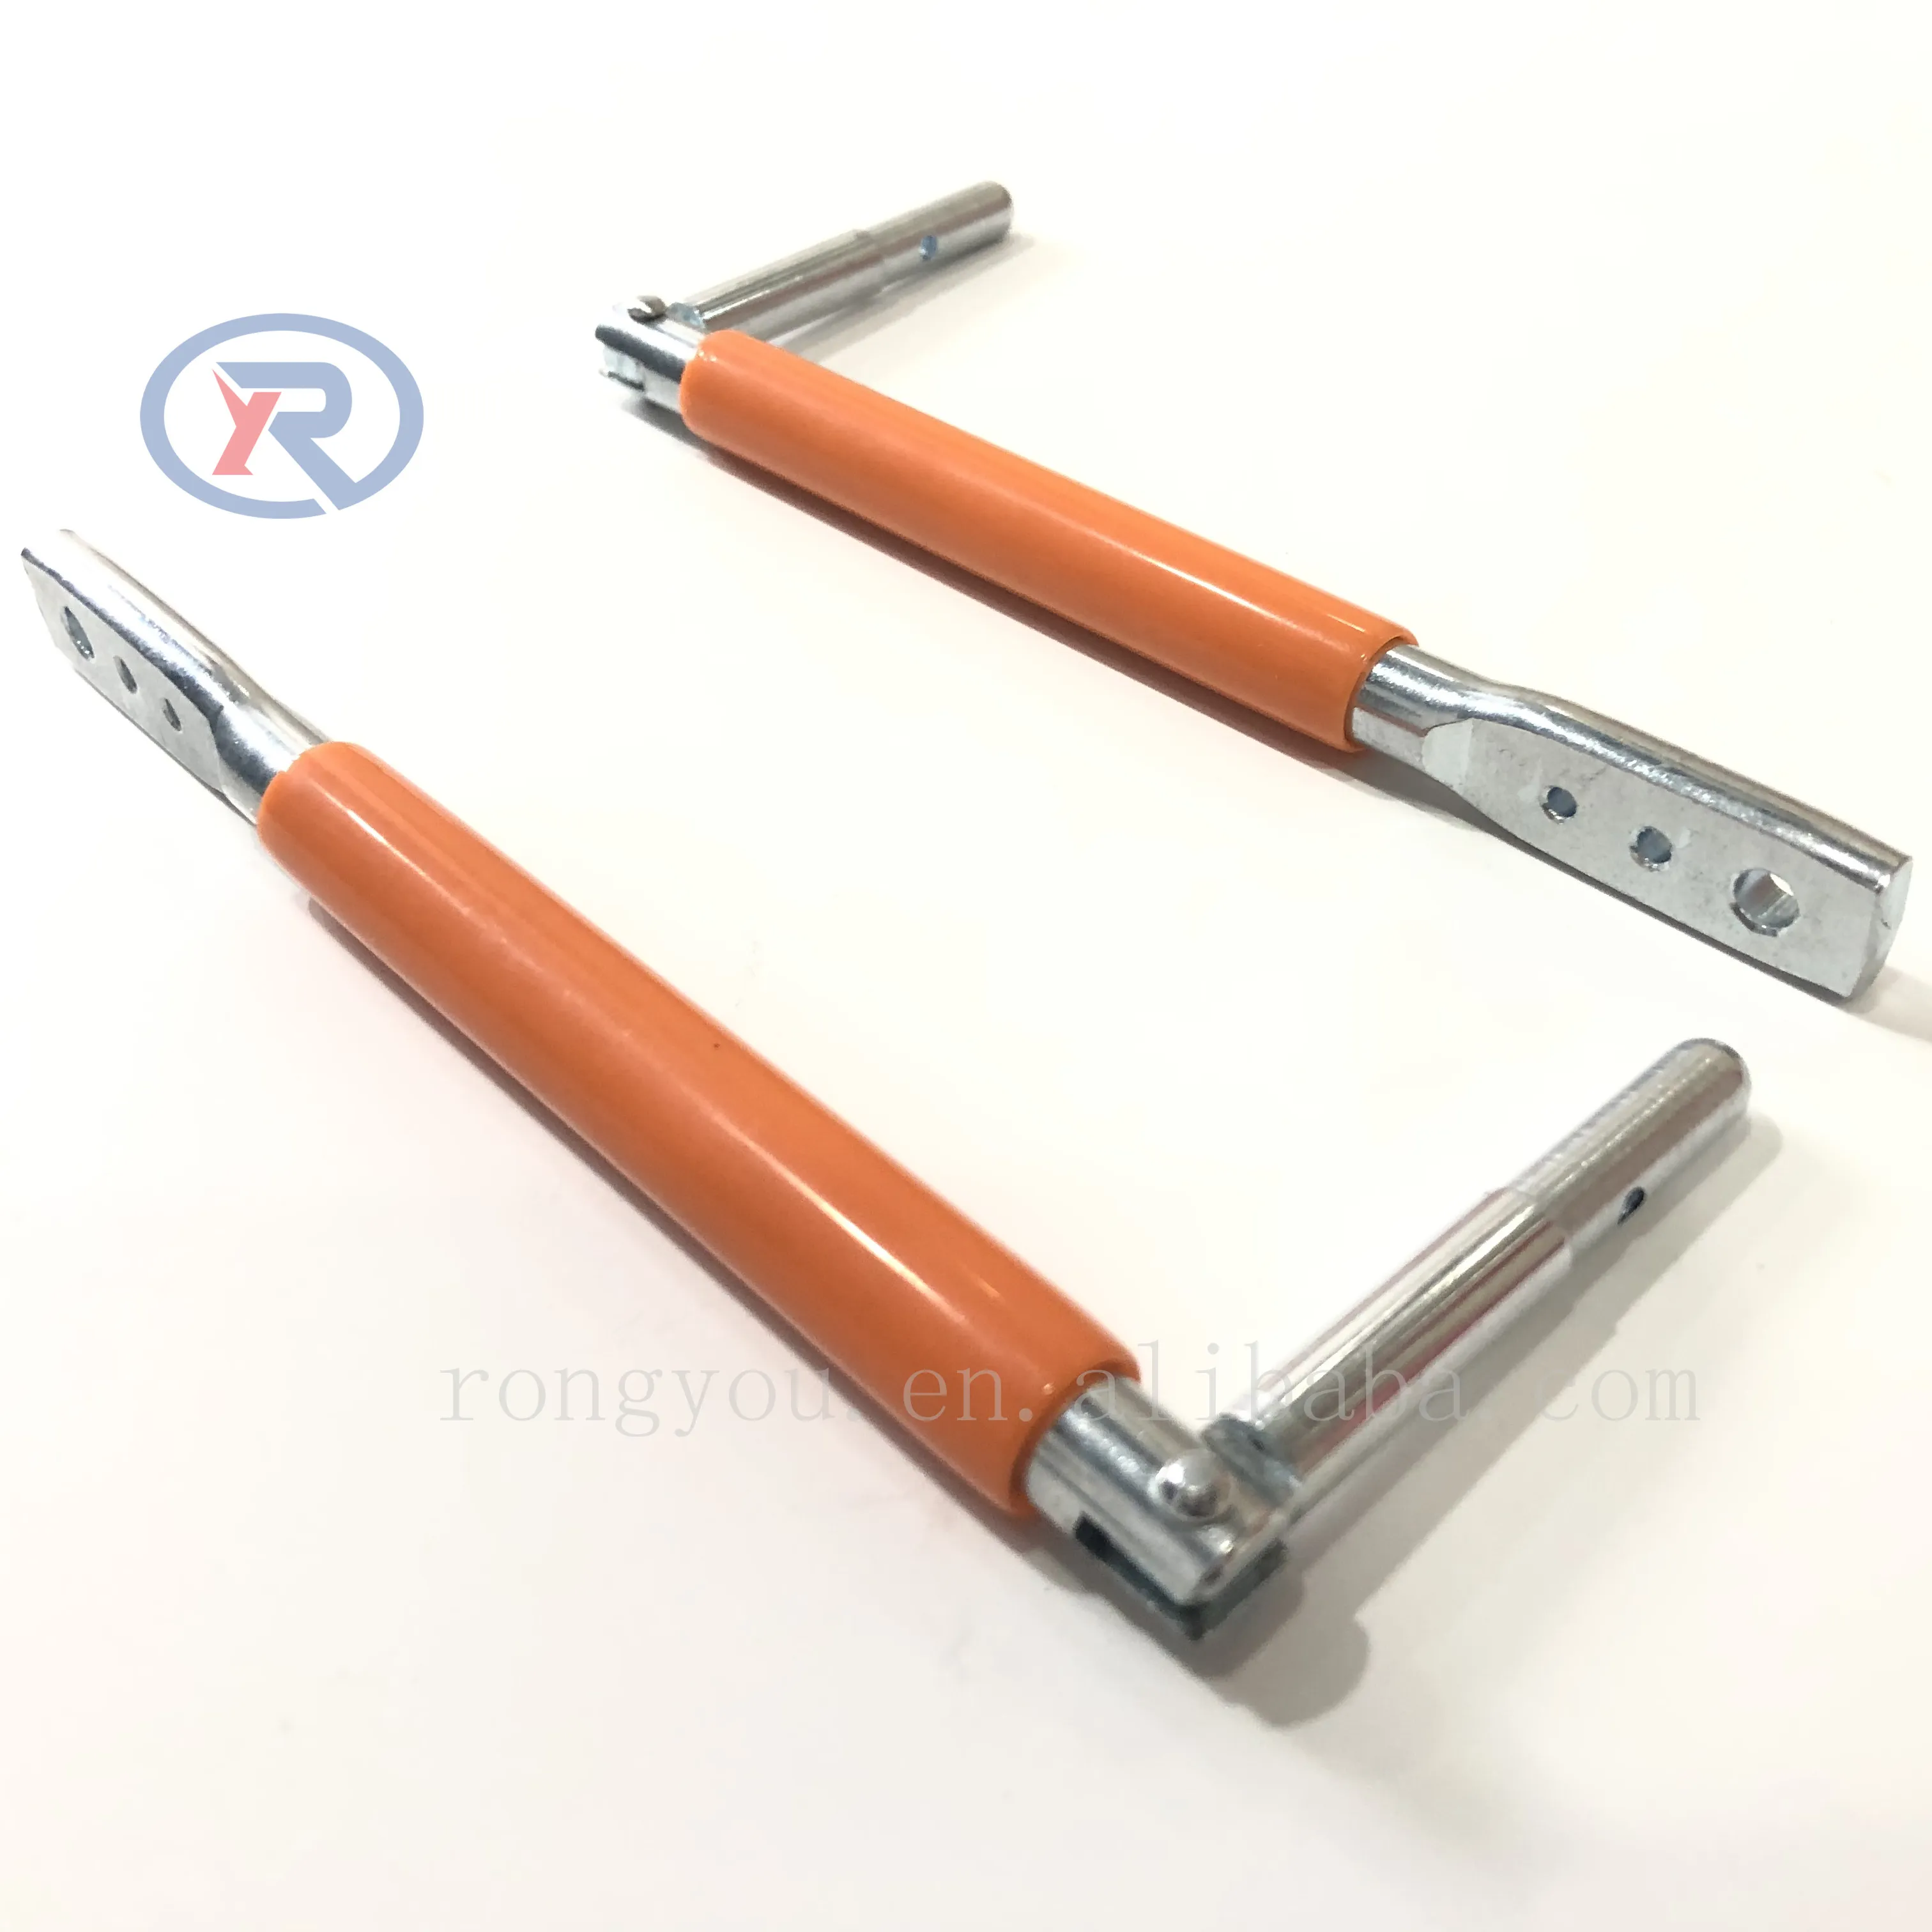 Clip Bender-Ideaal Hulpmiddel Voor Beveiligen T-Post Hek Clips/Draad Twister Voor Bevestiging Hek